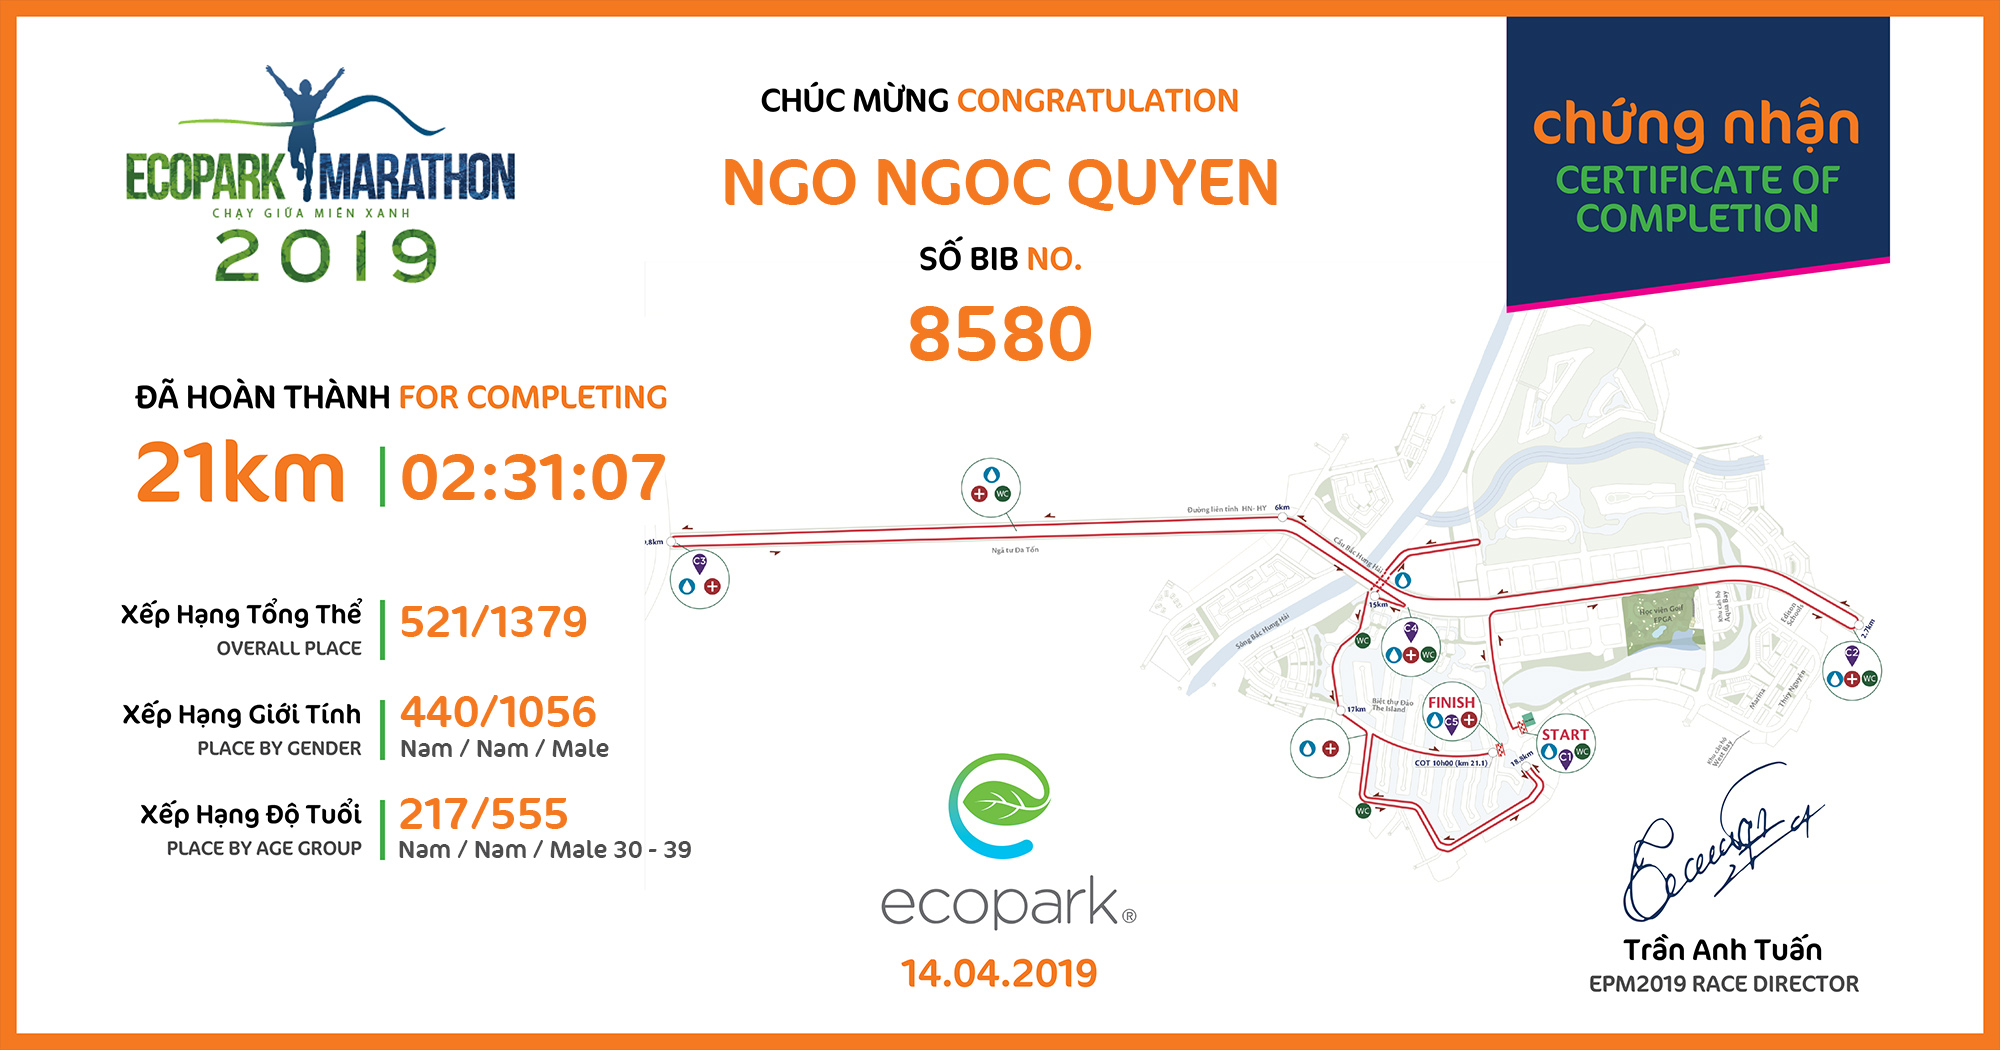 8580 - NGO NGOC QUYEN